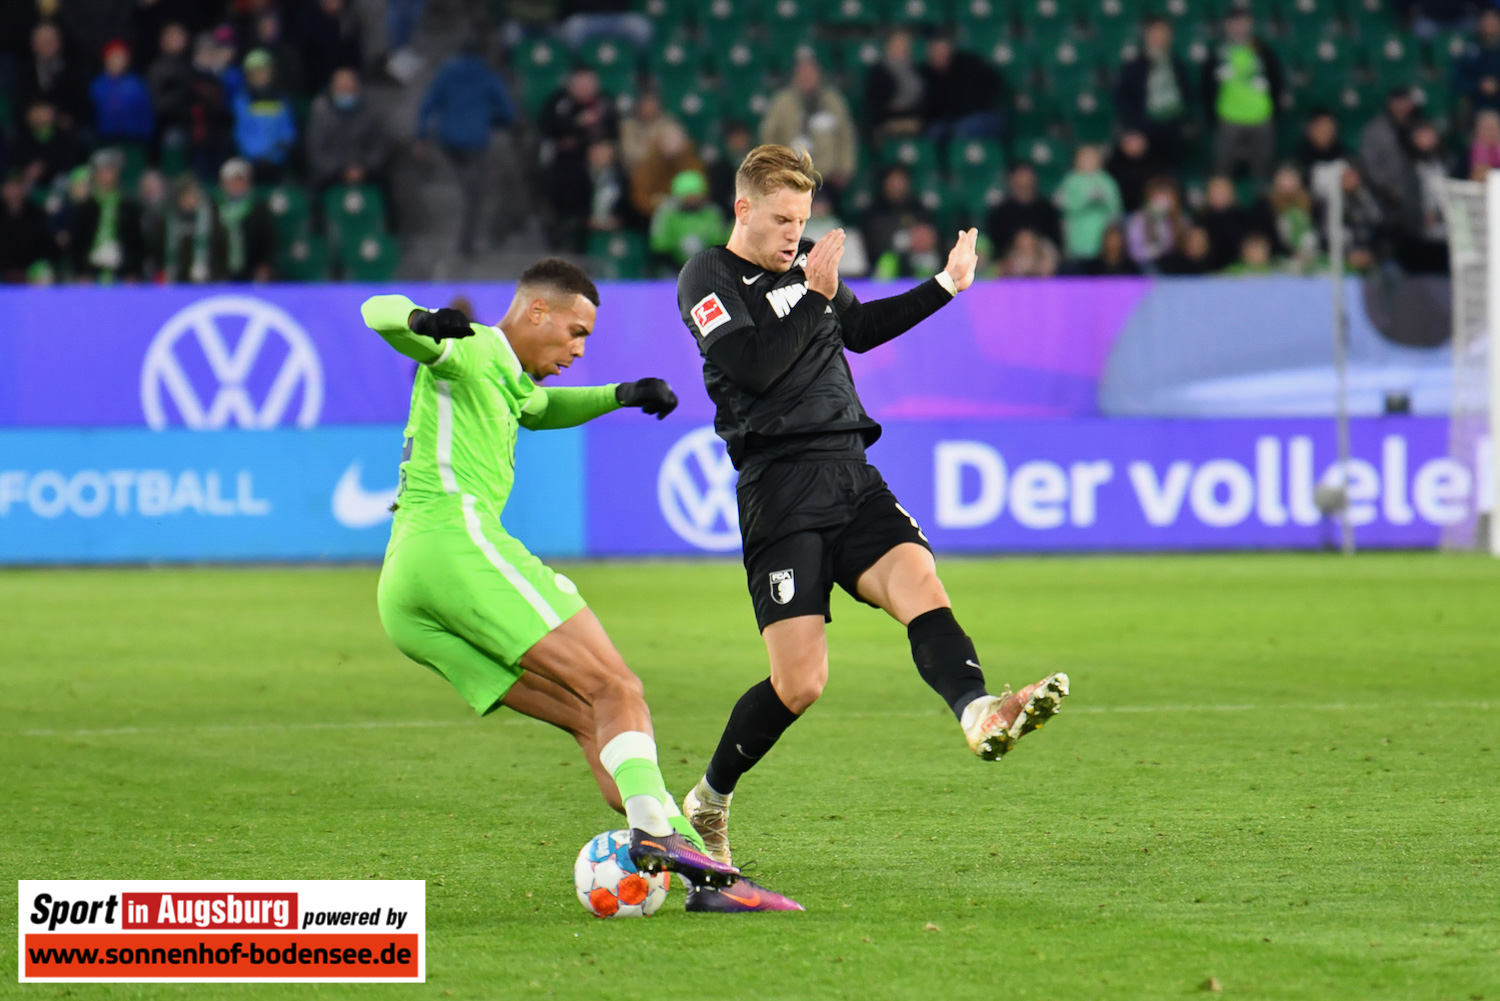 VfL Wolfsburg - FCA 06.11.21 - 58